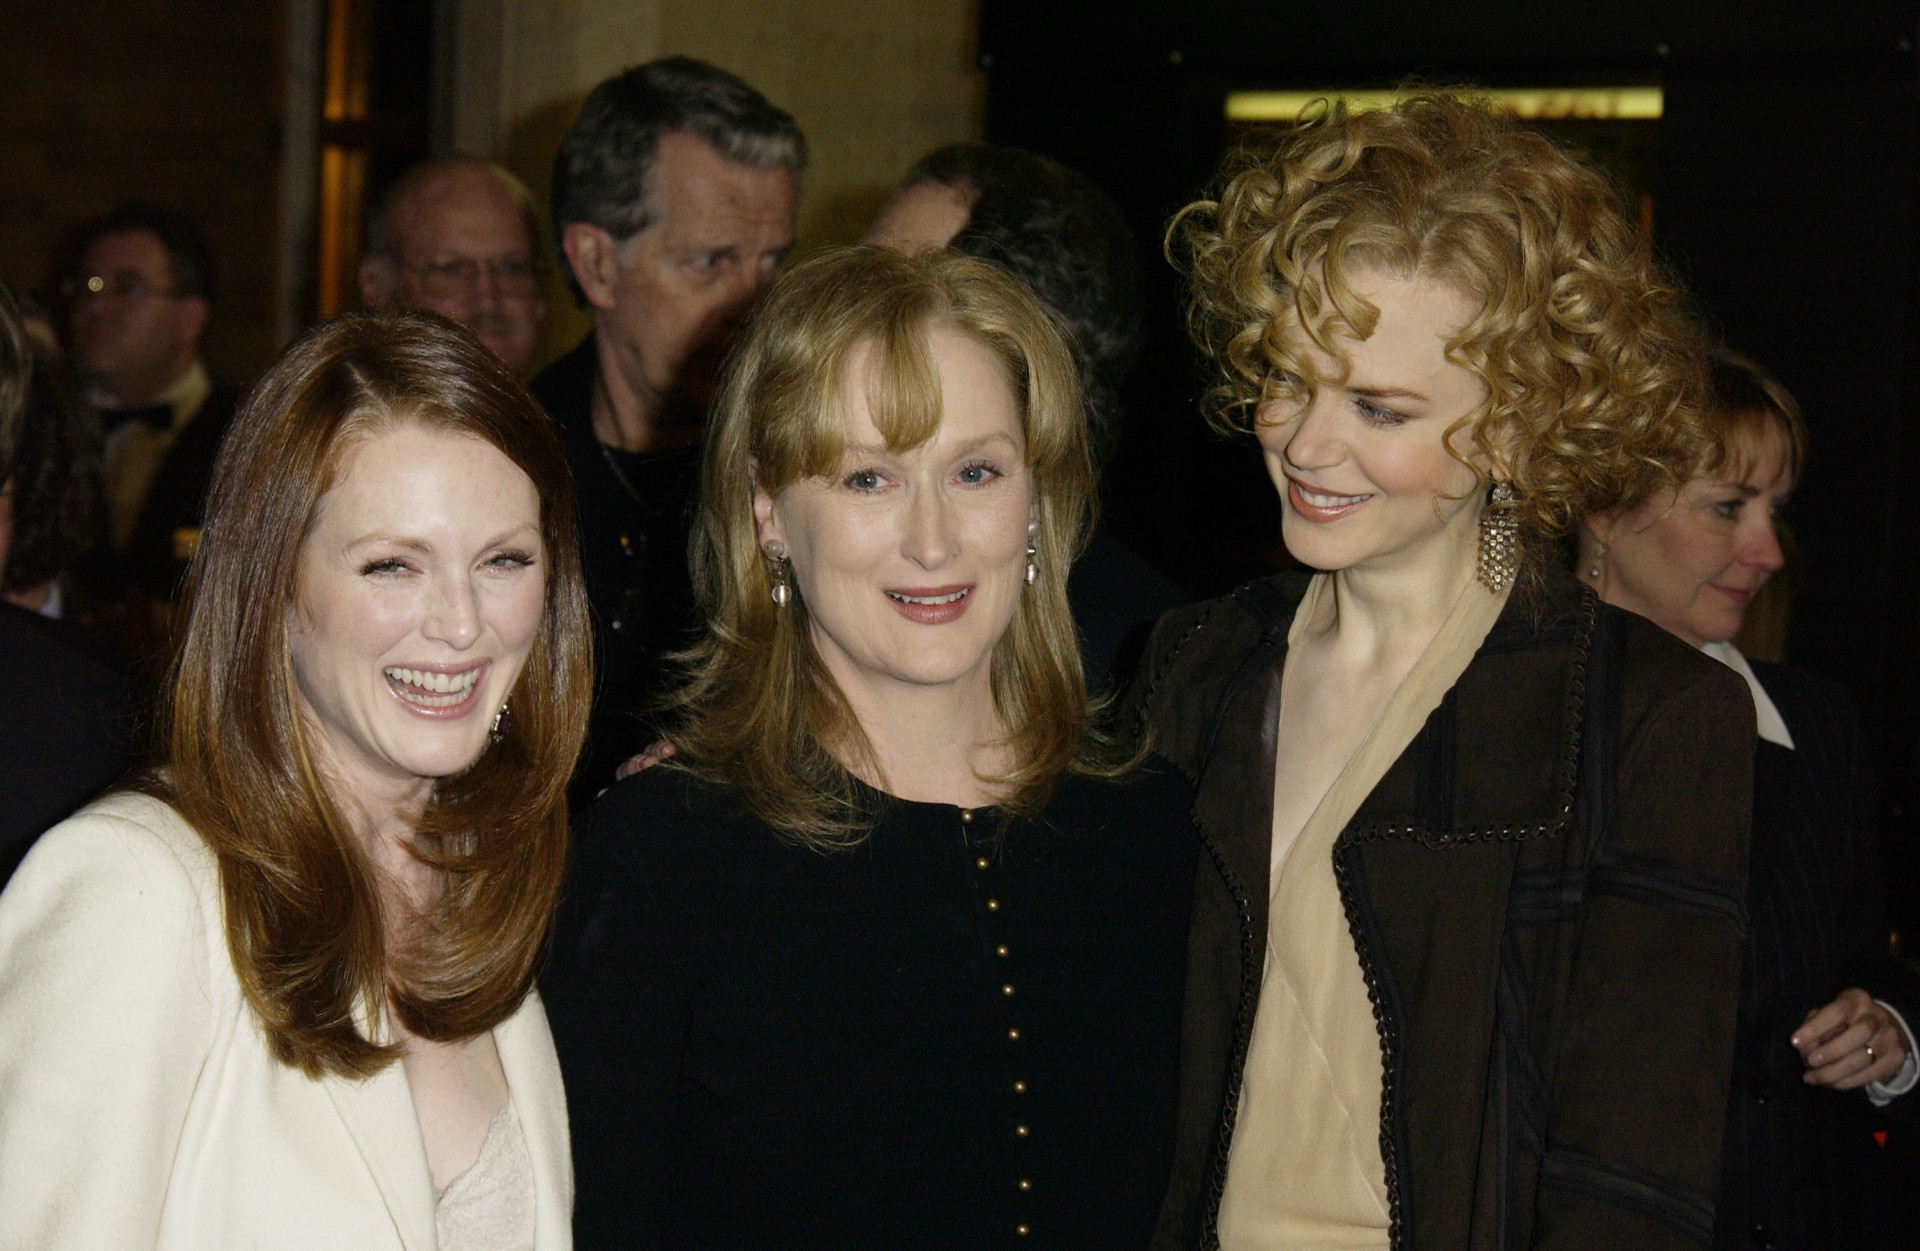 Em 2003, Moore ganhou um prêmio conjunto com Meryl Streep e Nicole Kidman de Melhor Atriz no Festival de Cinema de Berlim.